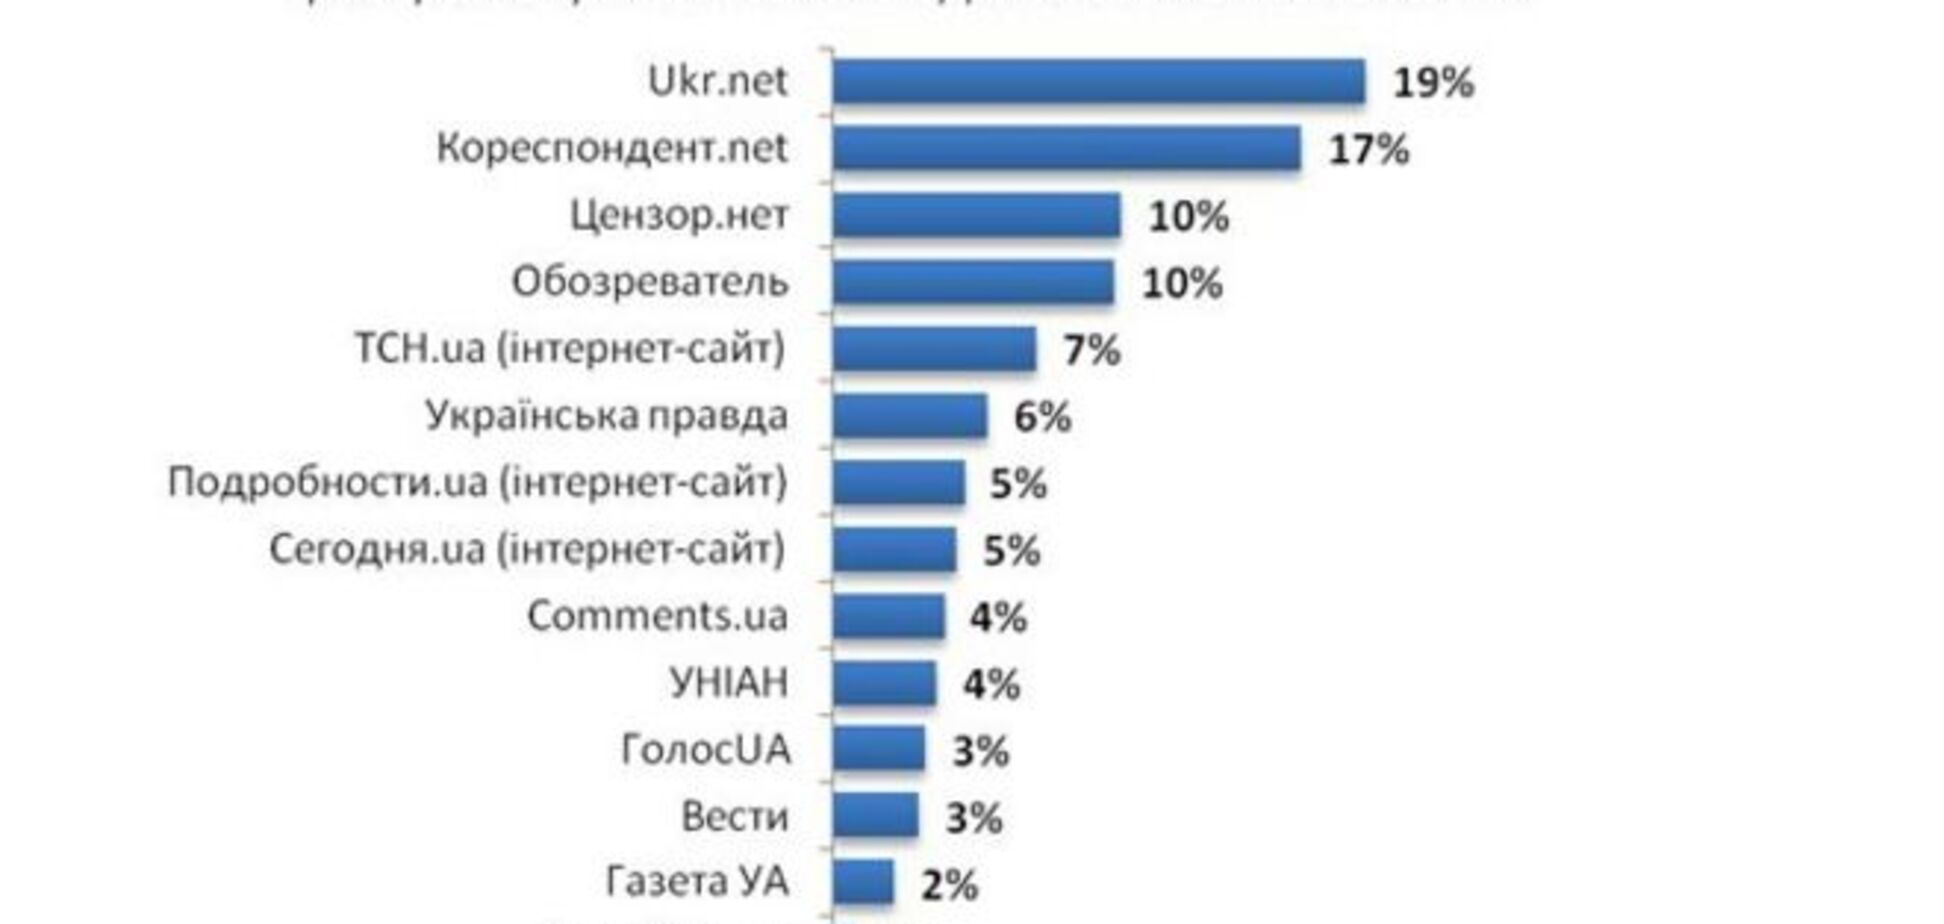 'Обозреватель' вошел в тройку самых популярных интернет-ресурсов среди жителей юго-востока Украины